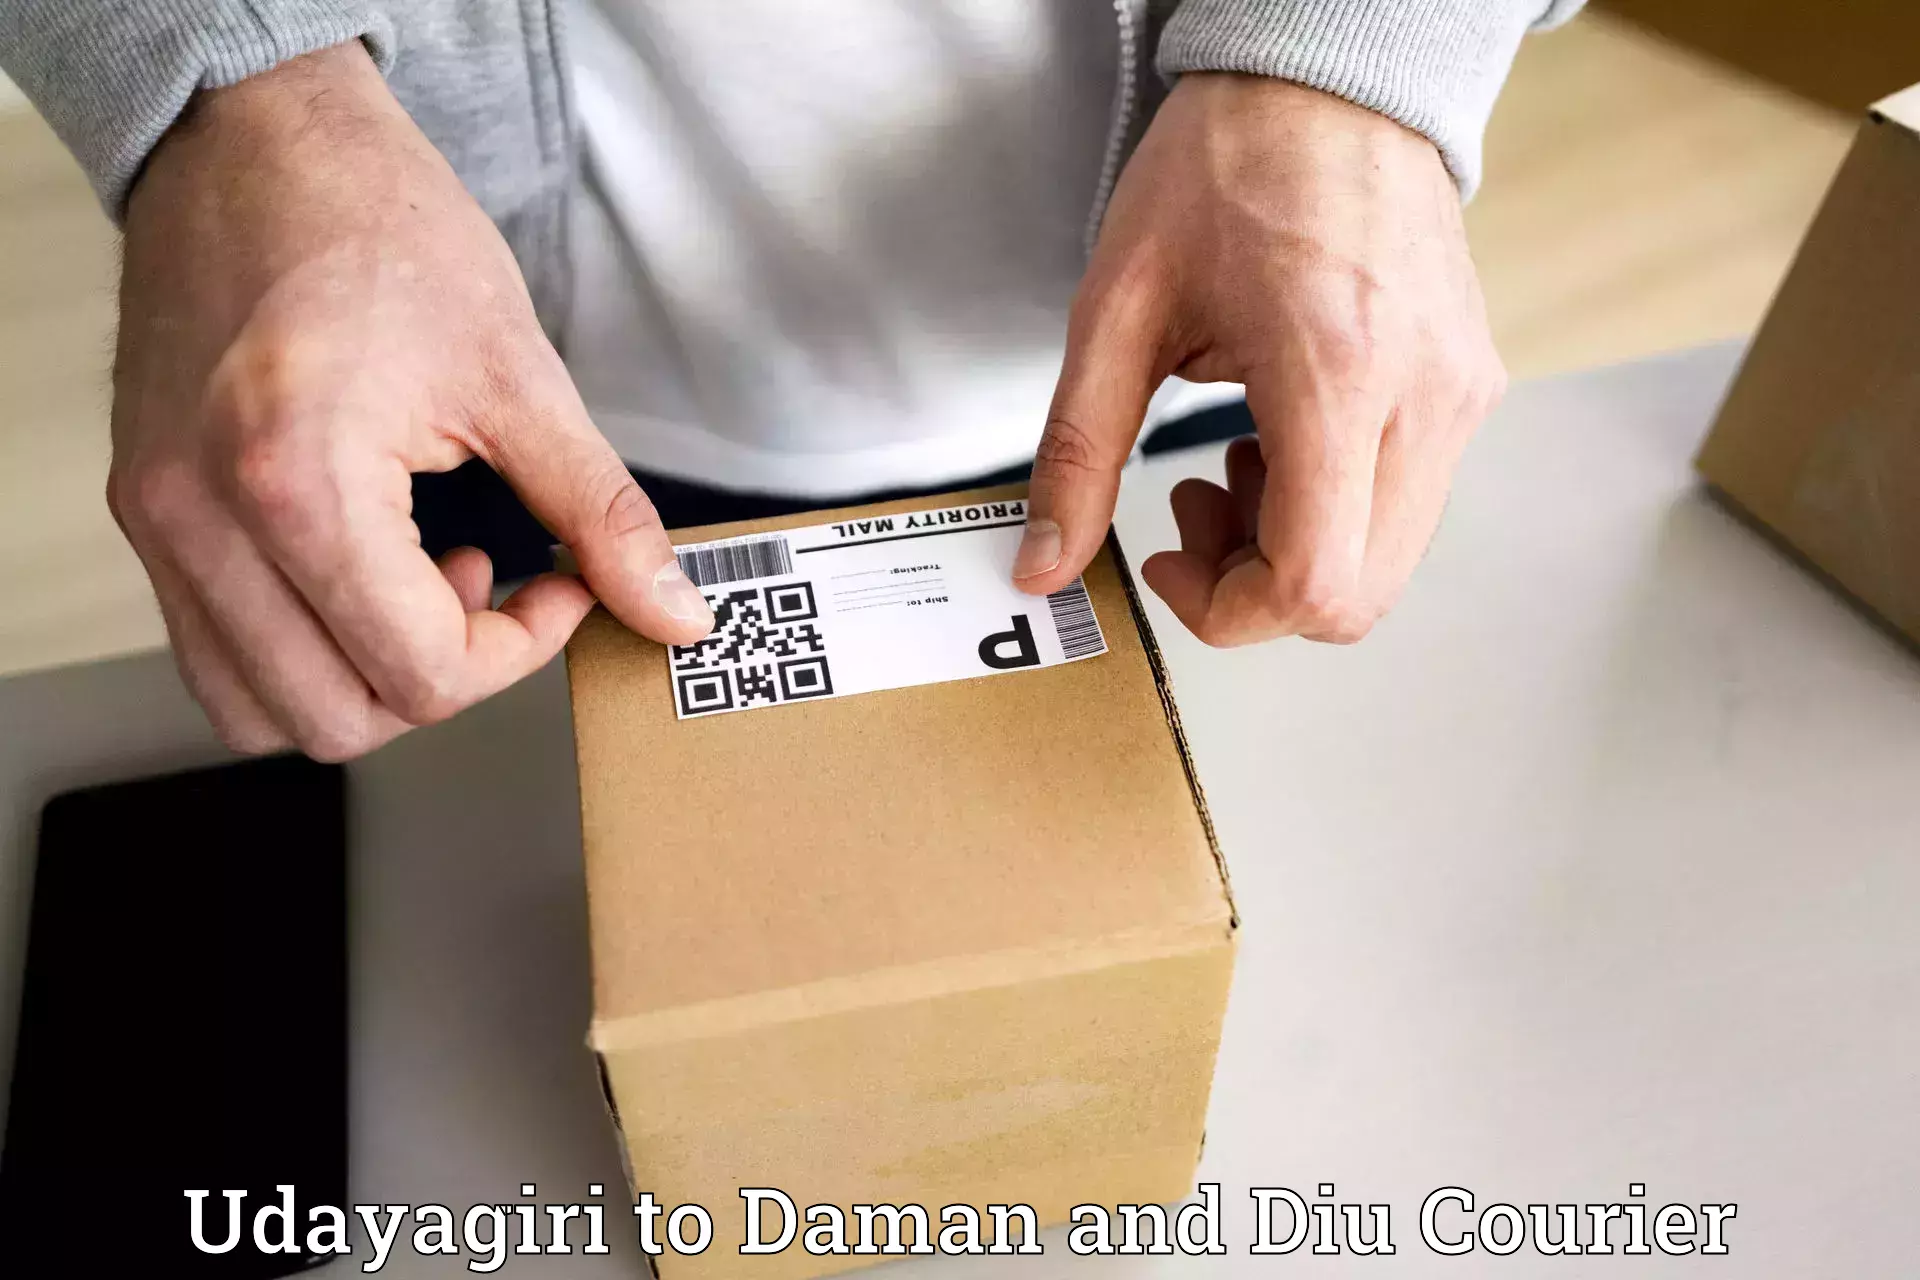 Large package courier Udayagiri to Daman